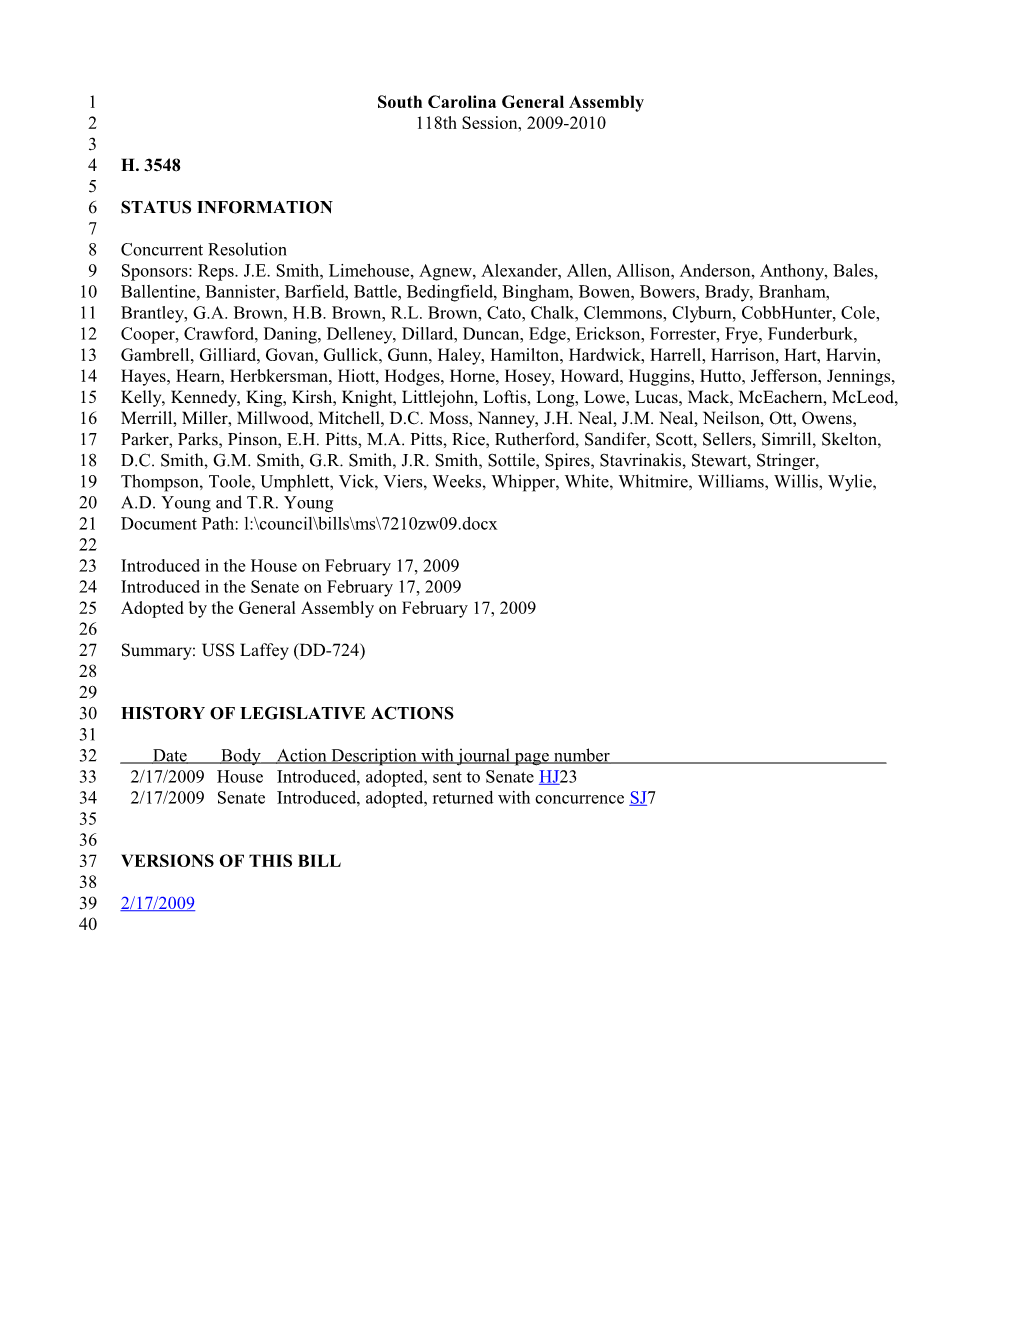 2009-2010 Bill 3548: USS Laffey (DD-724) - South Carolina Legislature Online